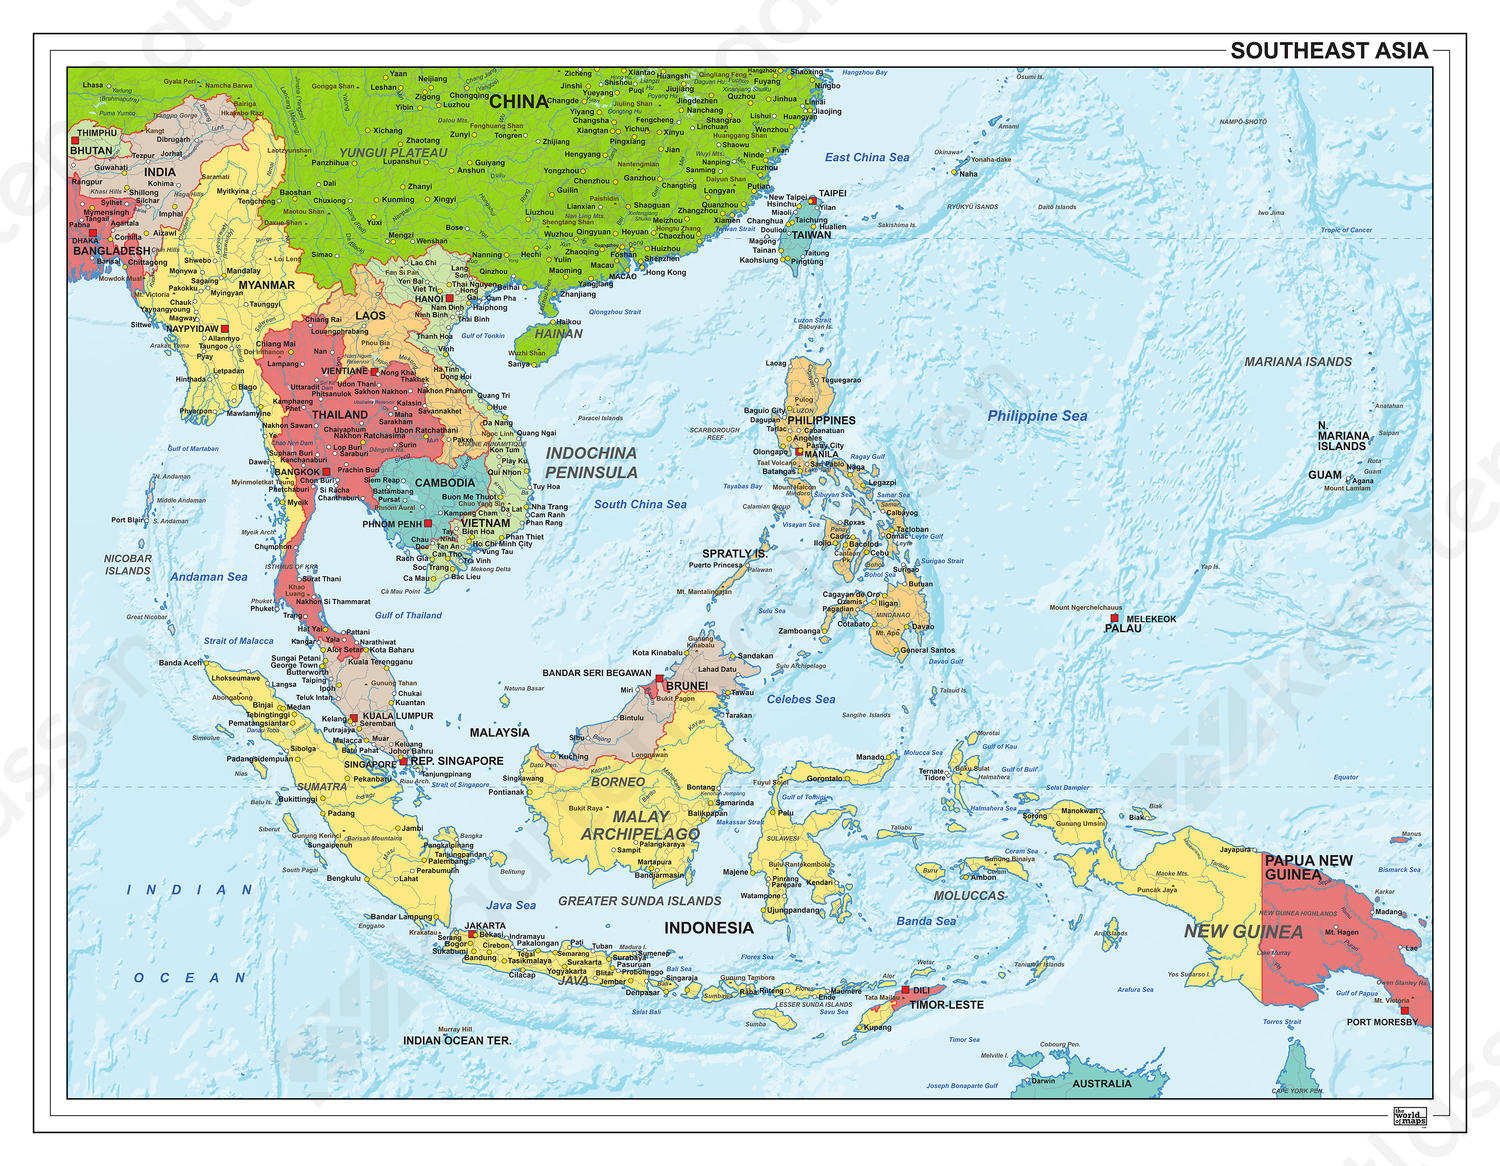 Zuidoost Azië staatkundig 1305